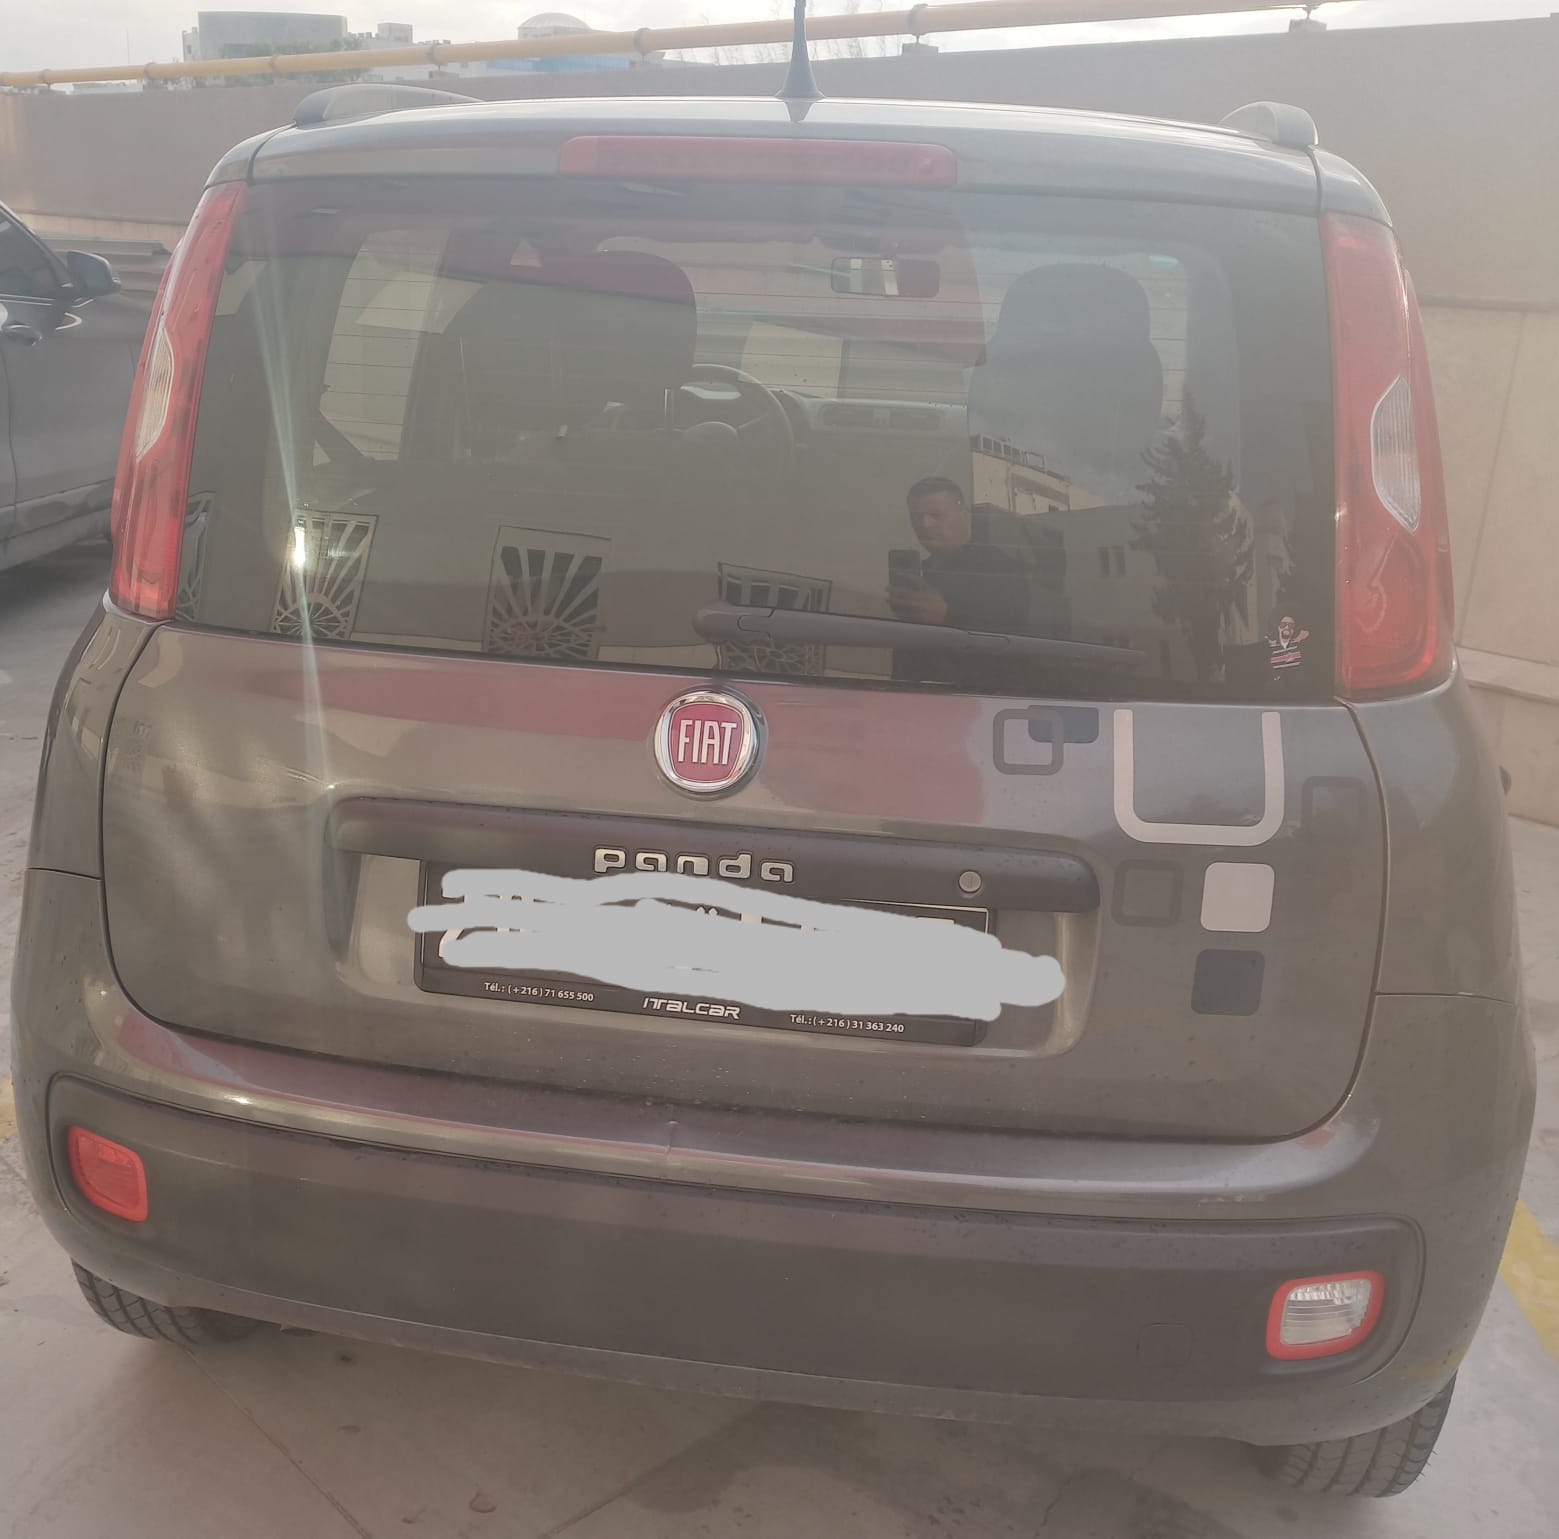 Fiat Panda - Tunisie